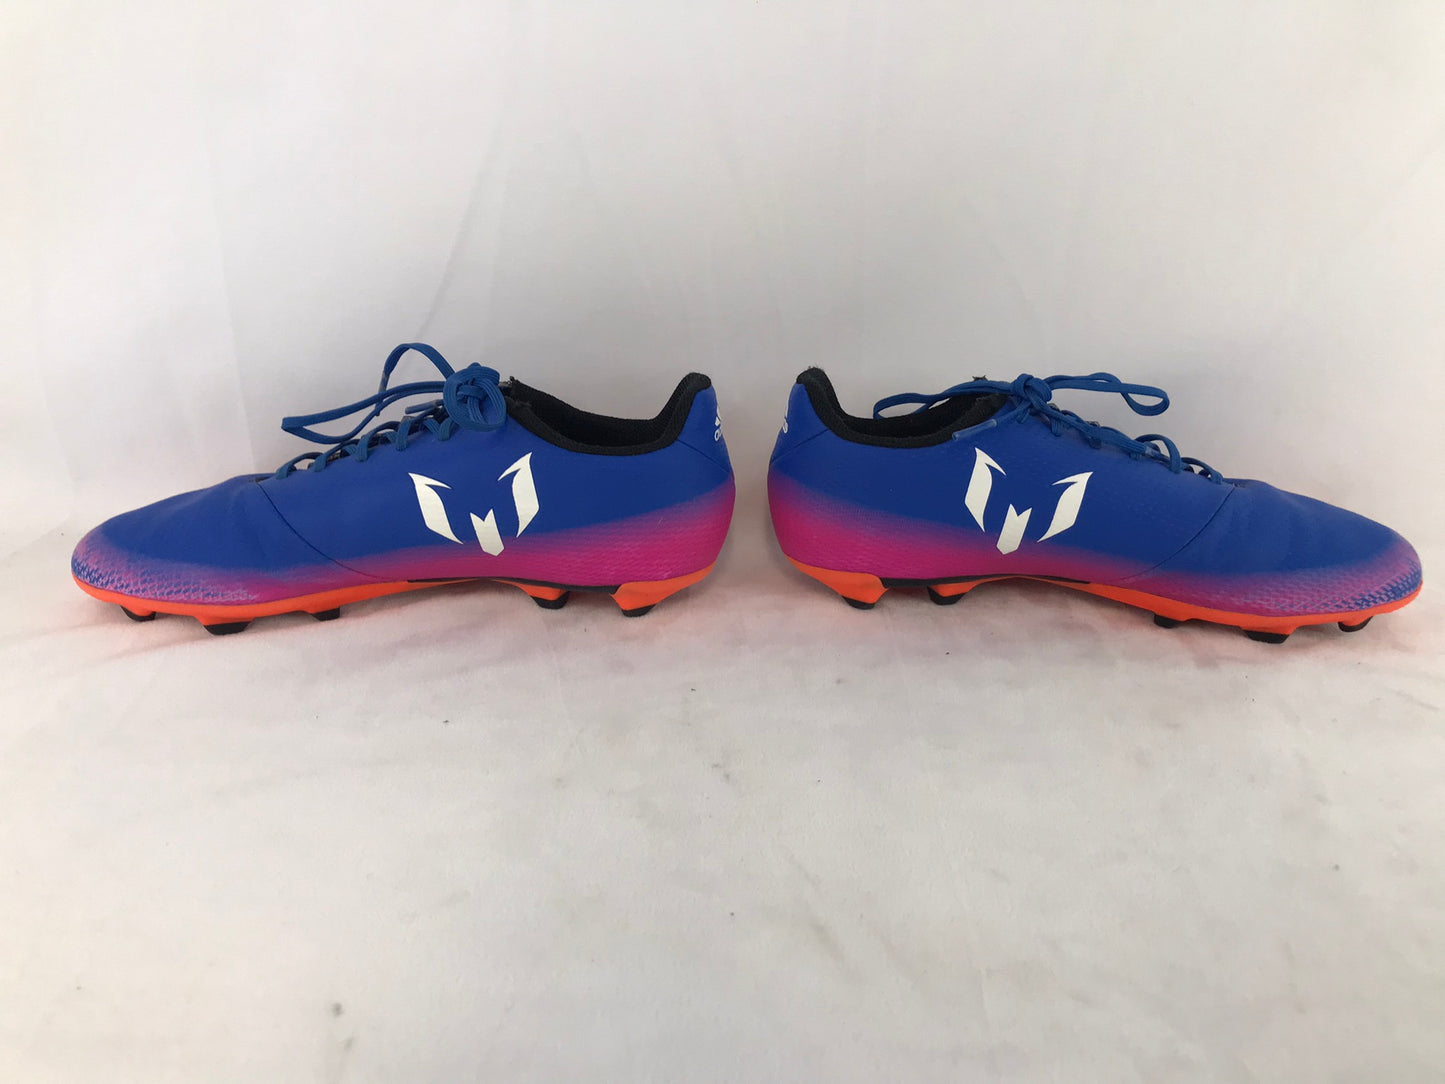 Soccer Shoes Cleats Child Size 5 Adidas Blue Fushia Orange